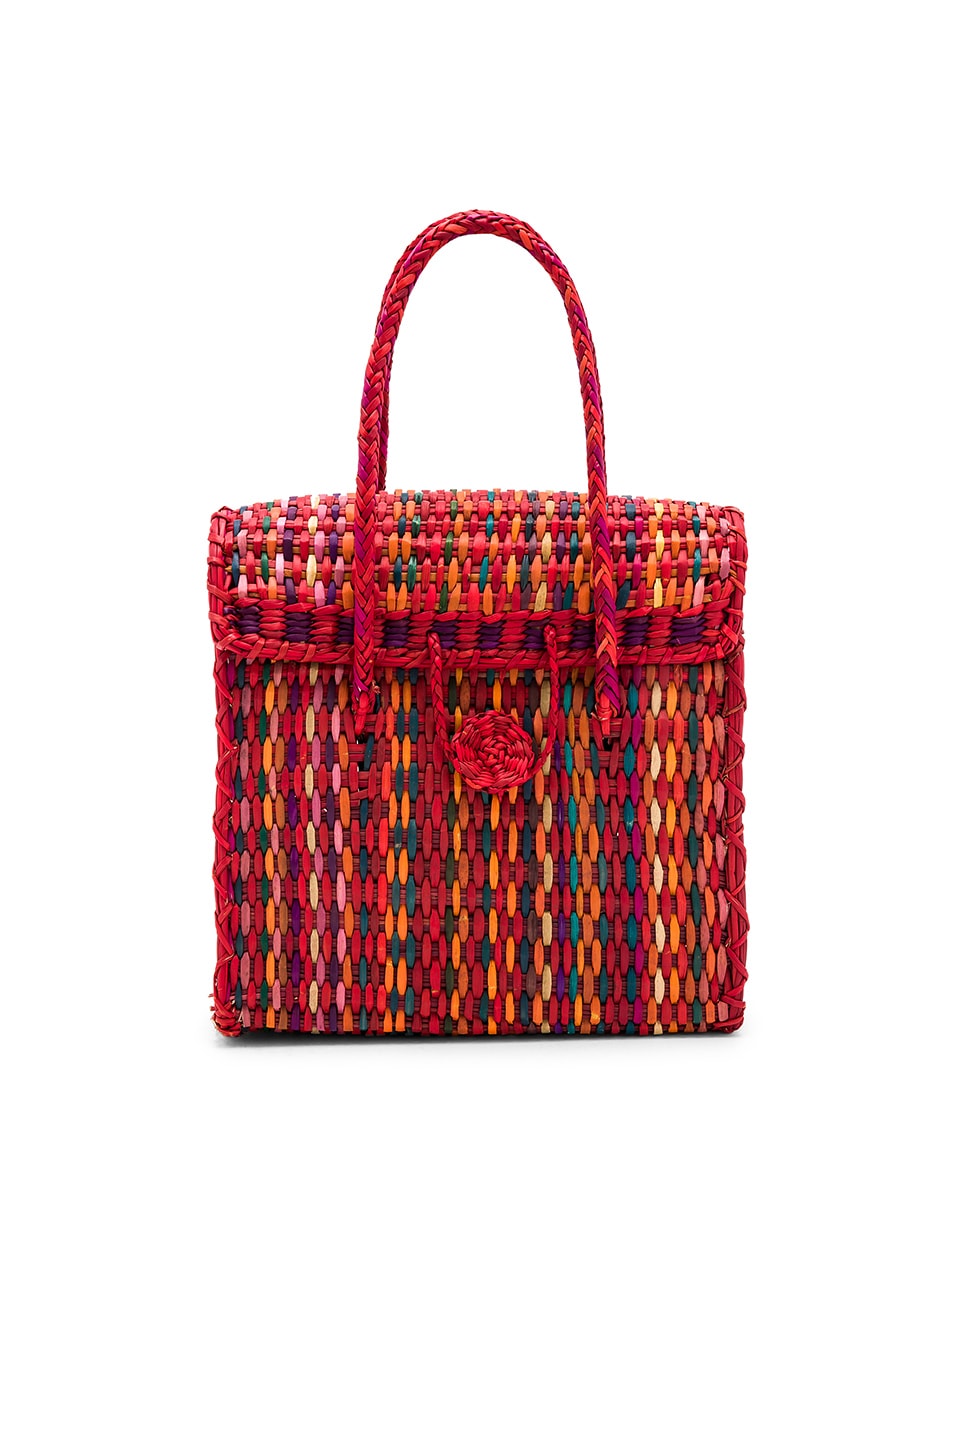 Pitusa Straw Handbag in Multi Red | REVOLVE